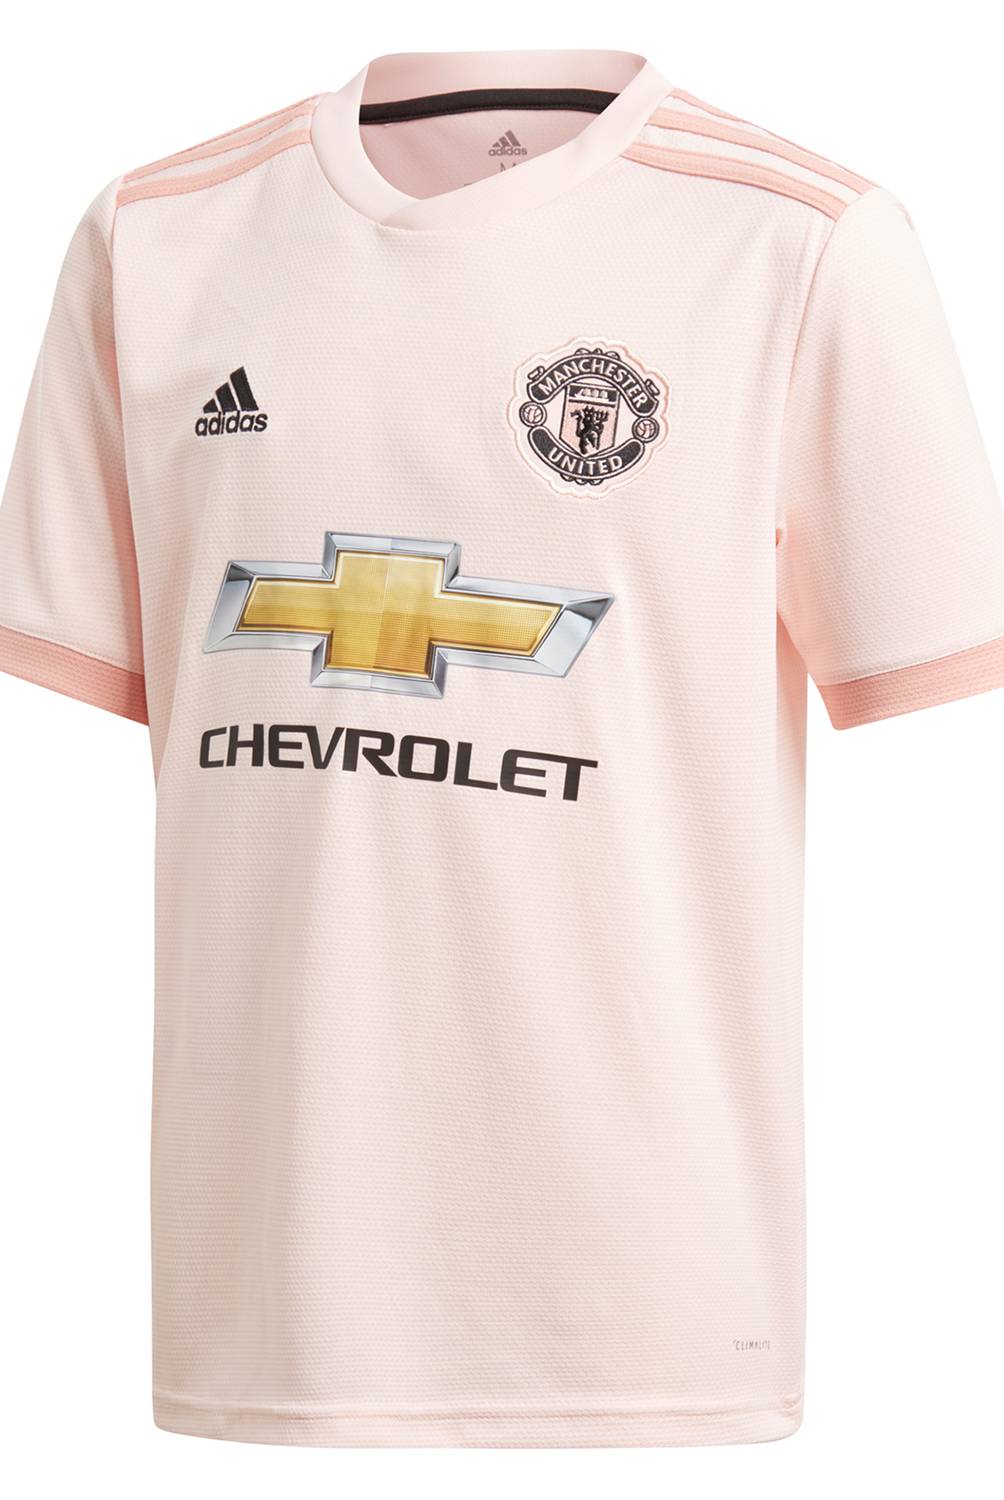 adidas - Camiseta Niño Alternativa Manchester United